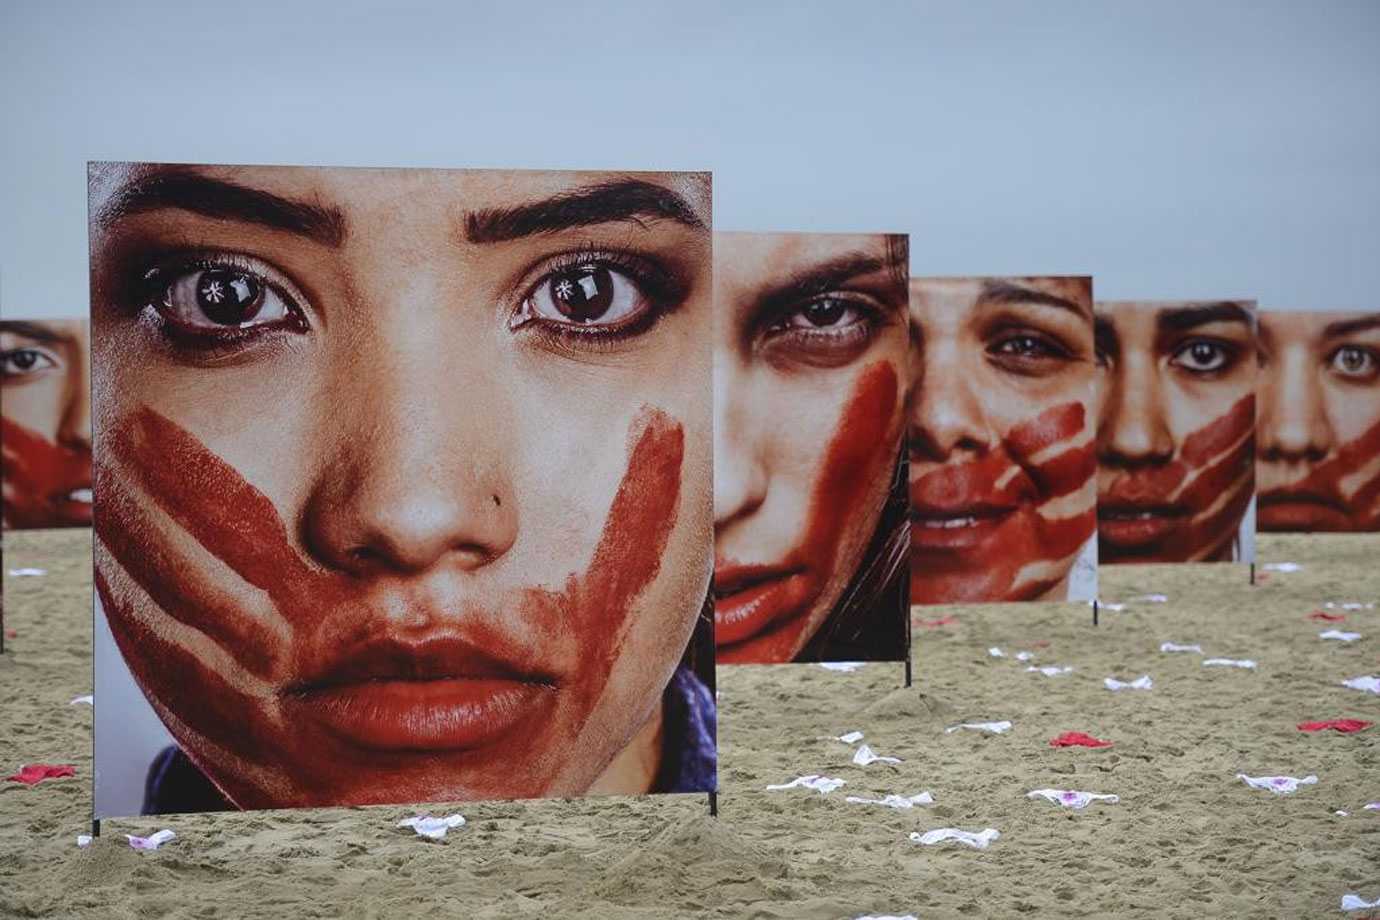 Portugal: estupro é o sétimo crime mais cometido no país (Foto: Tânia Rêgo/Agência Brasil)